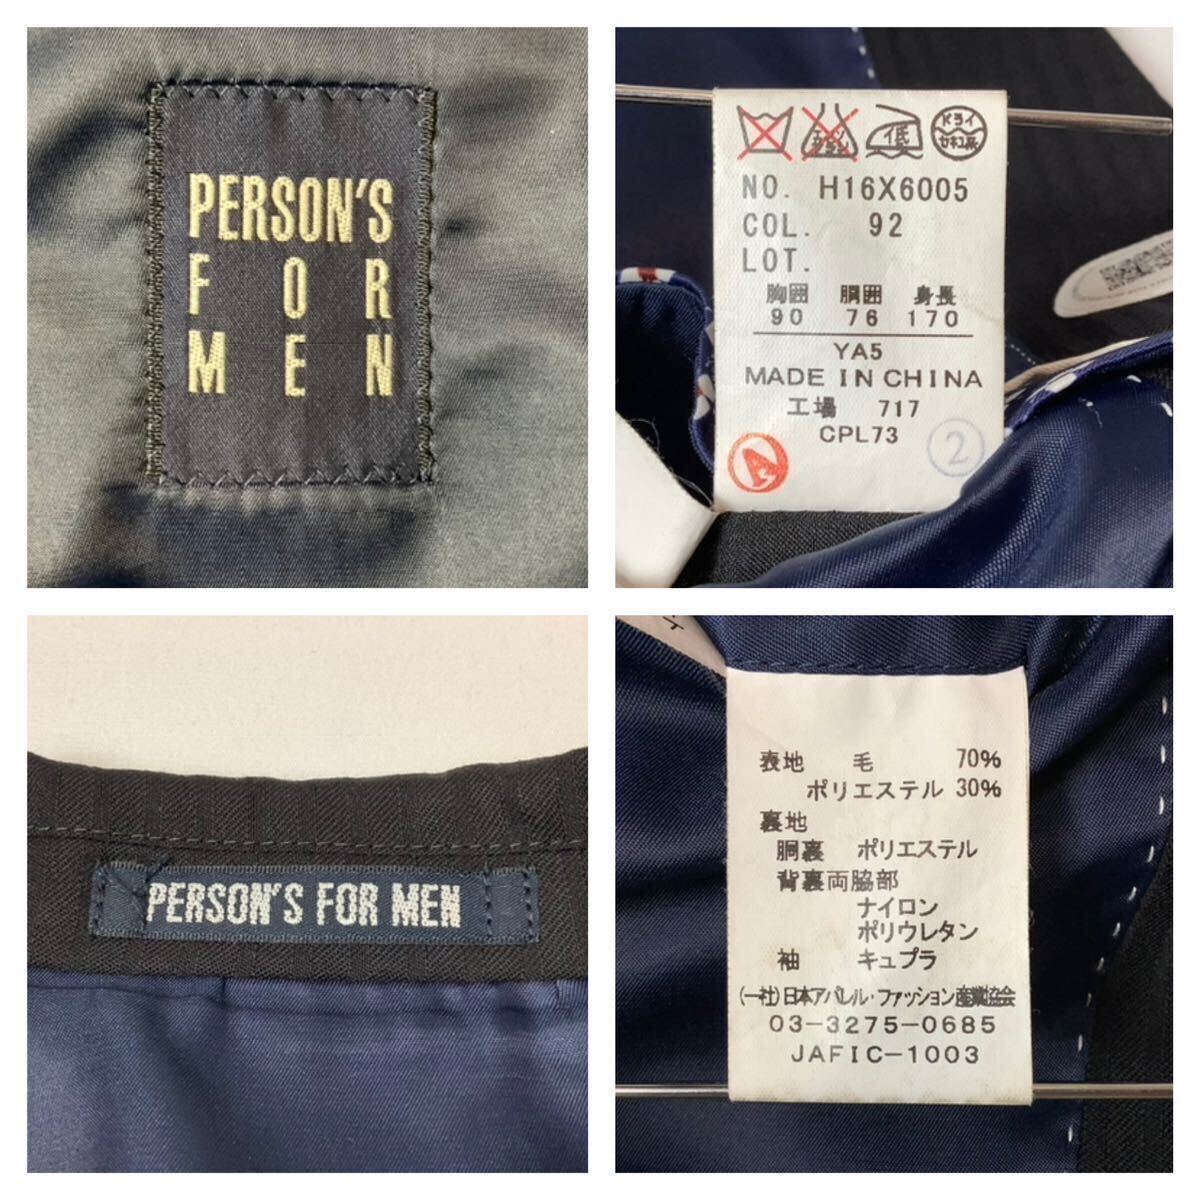 PERSON'S FOR MEN // 背抜き 長袖 シャドーストライプ柄 シングル スーツ (黒) サイズ 90YA5 (M)の画像9